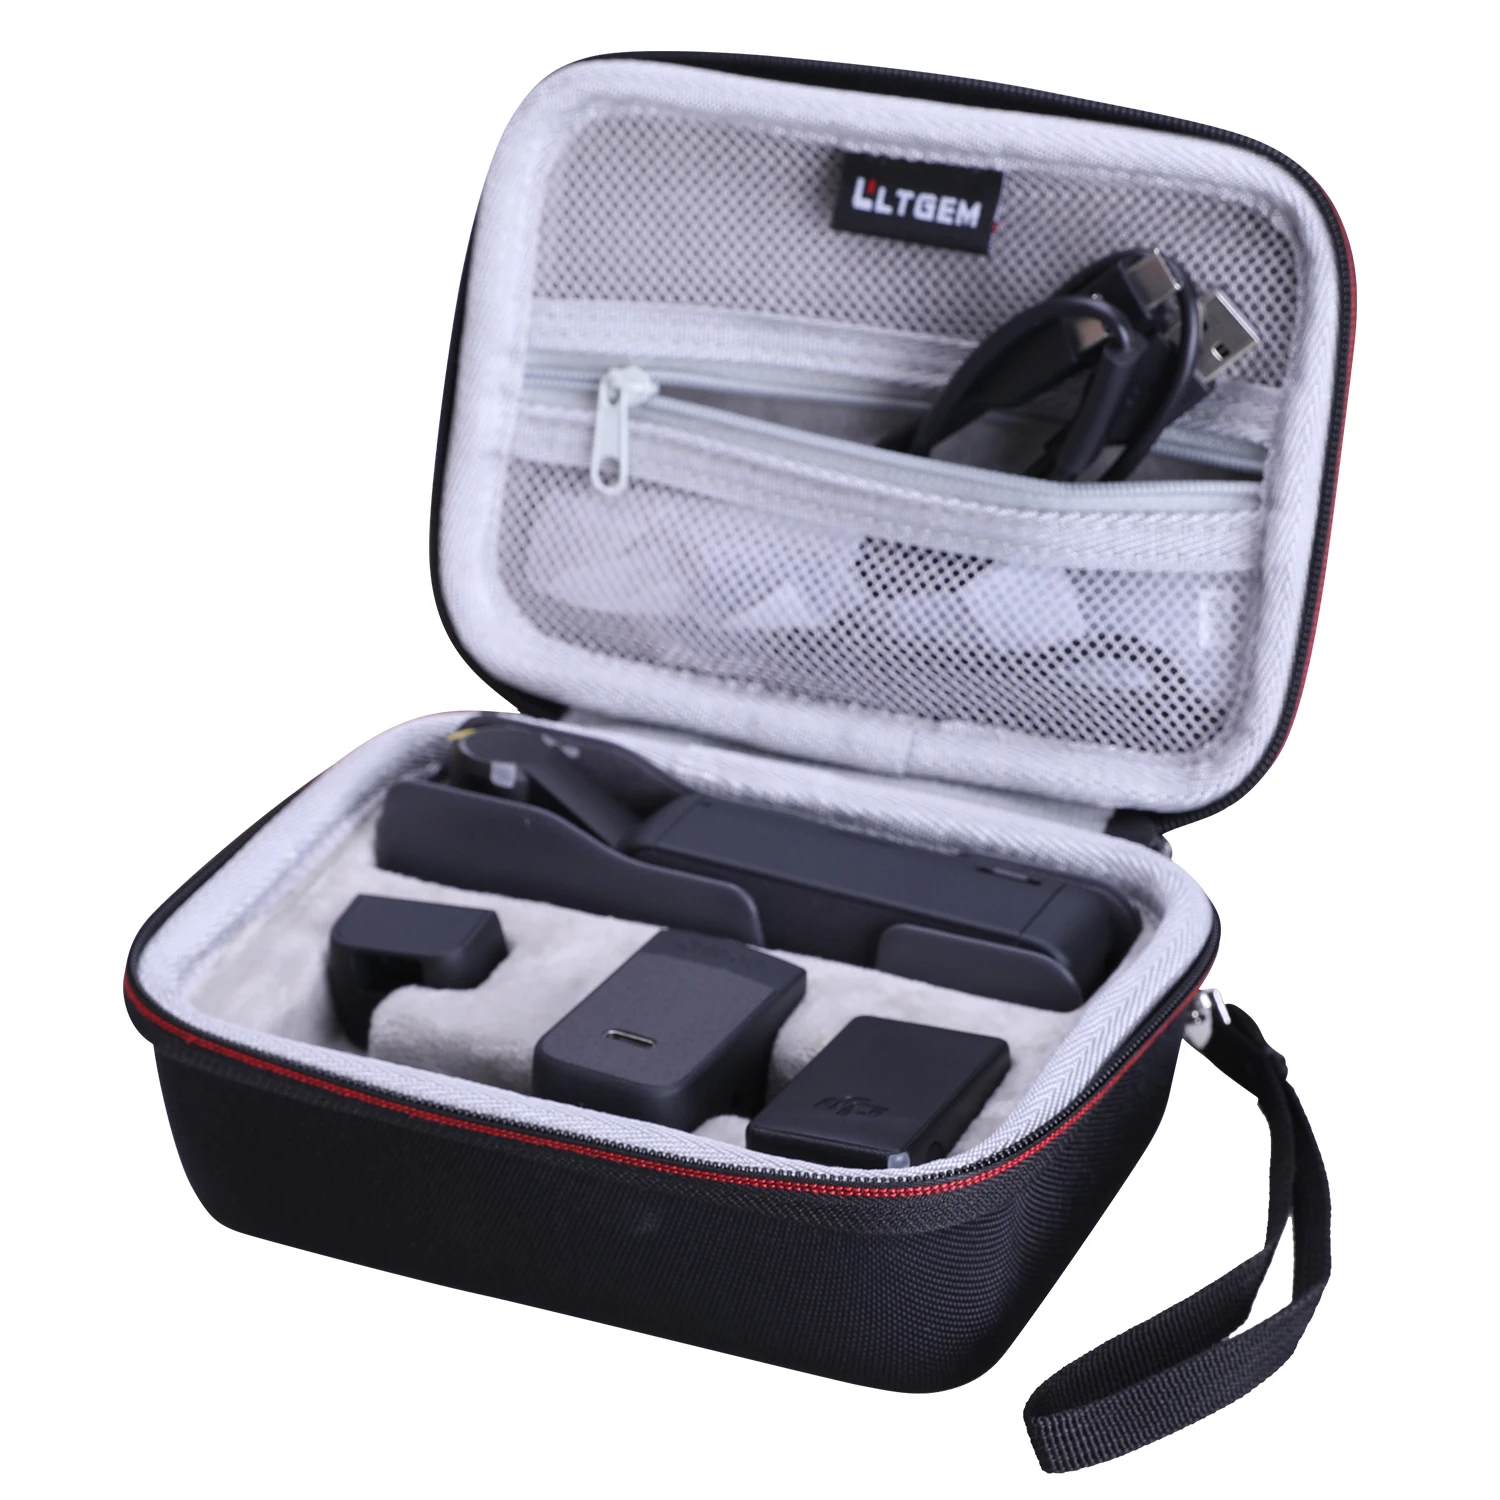 LTGEM EVA Hard Case for DJI Pocket 2 Creator Combo Travel Protective Carrying Storage Bag 